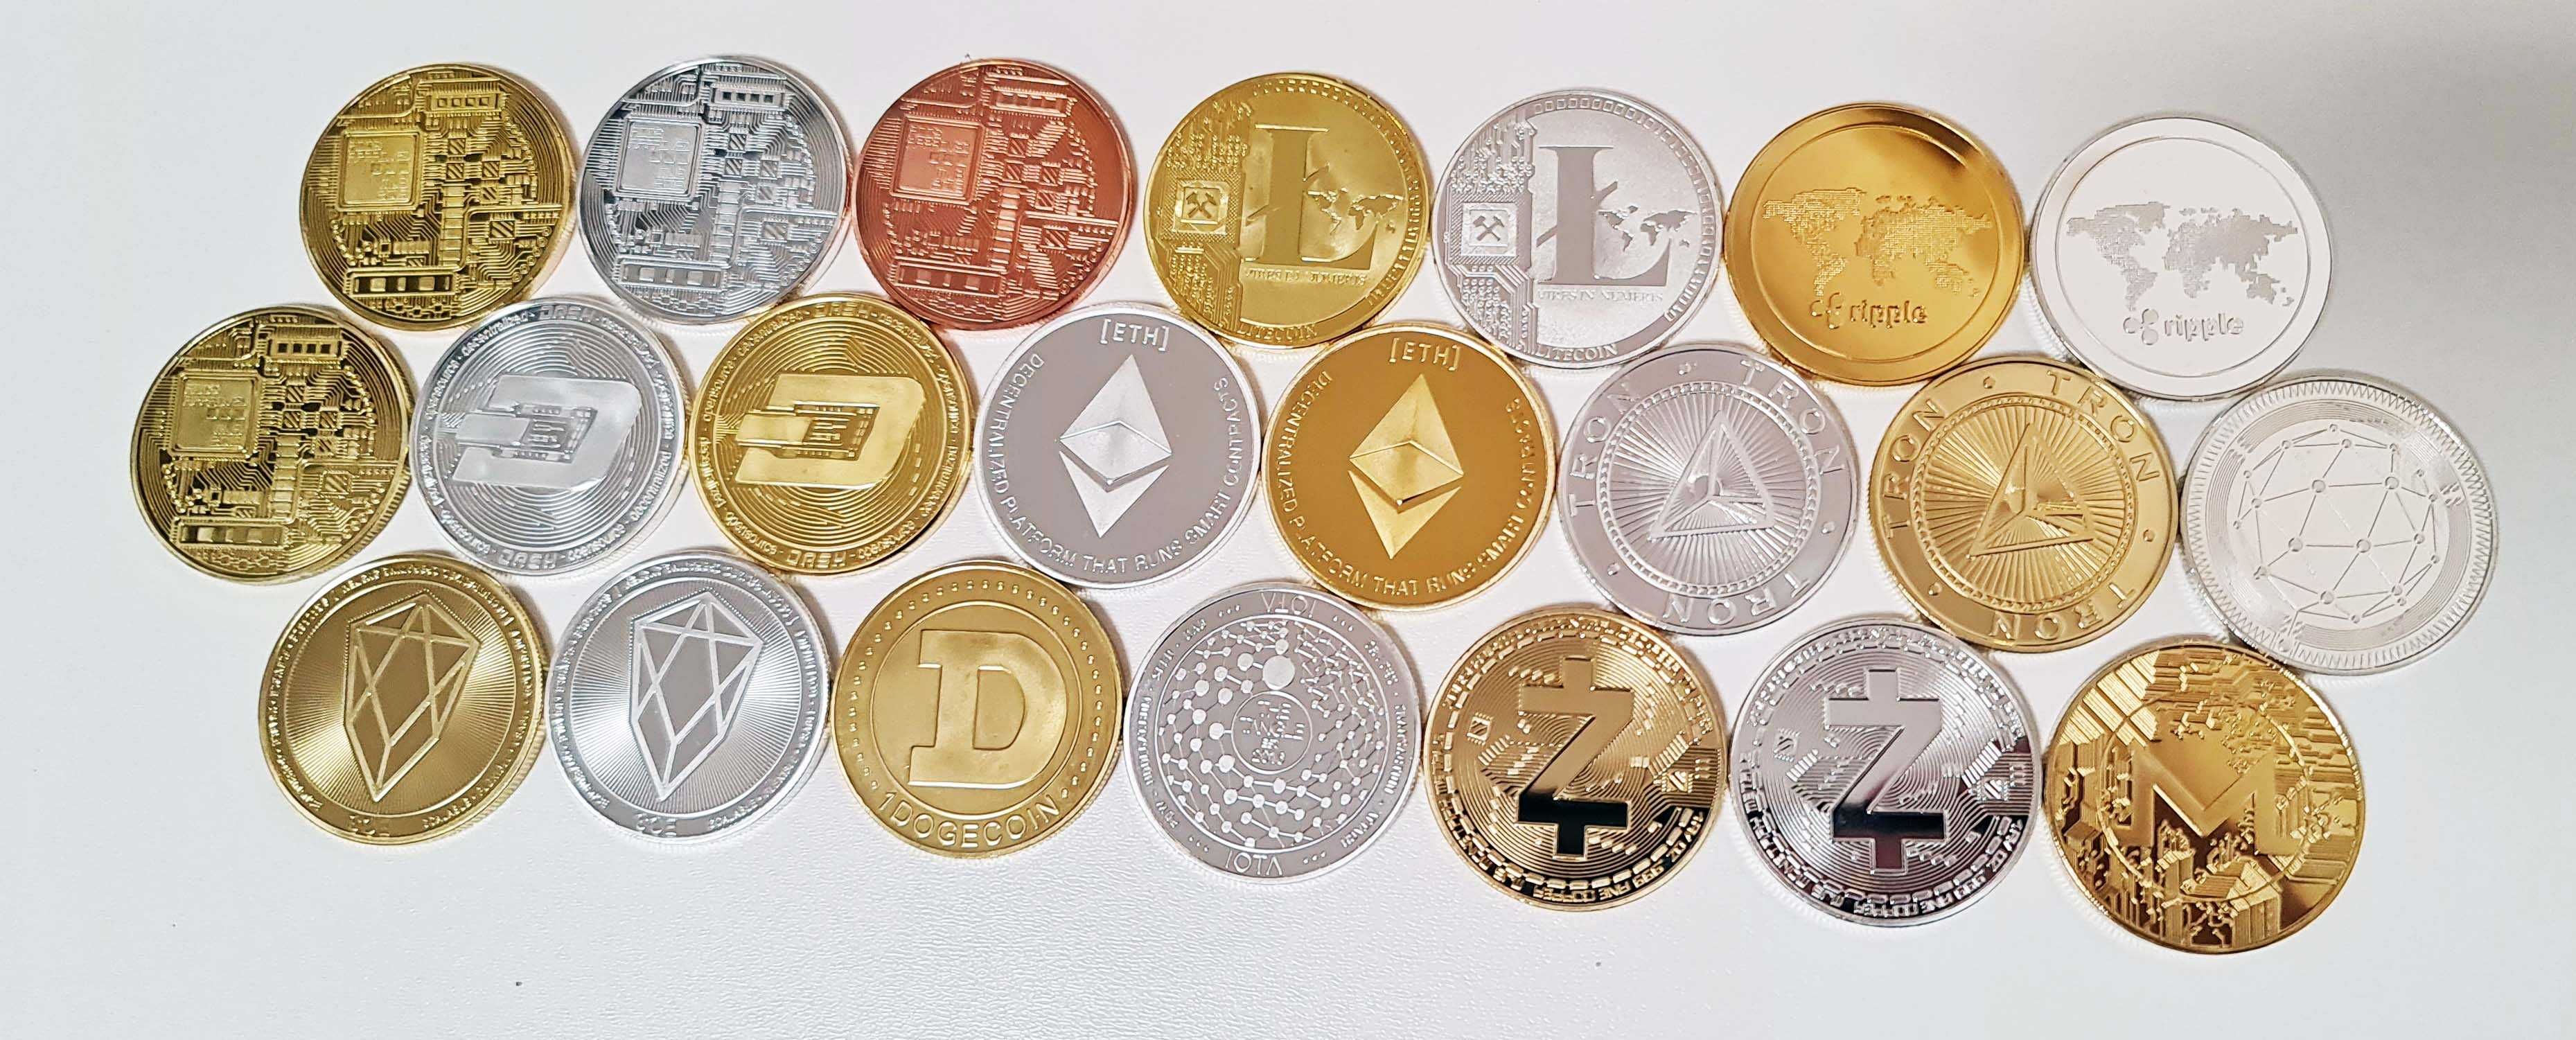 КОМПЛЕКТ 22 шт. Сувенирные монеты биткоин, лайткоин, эфир, даш bitcoi